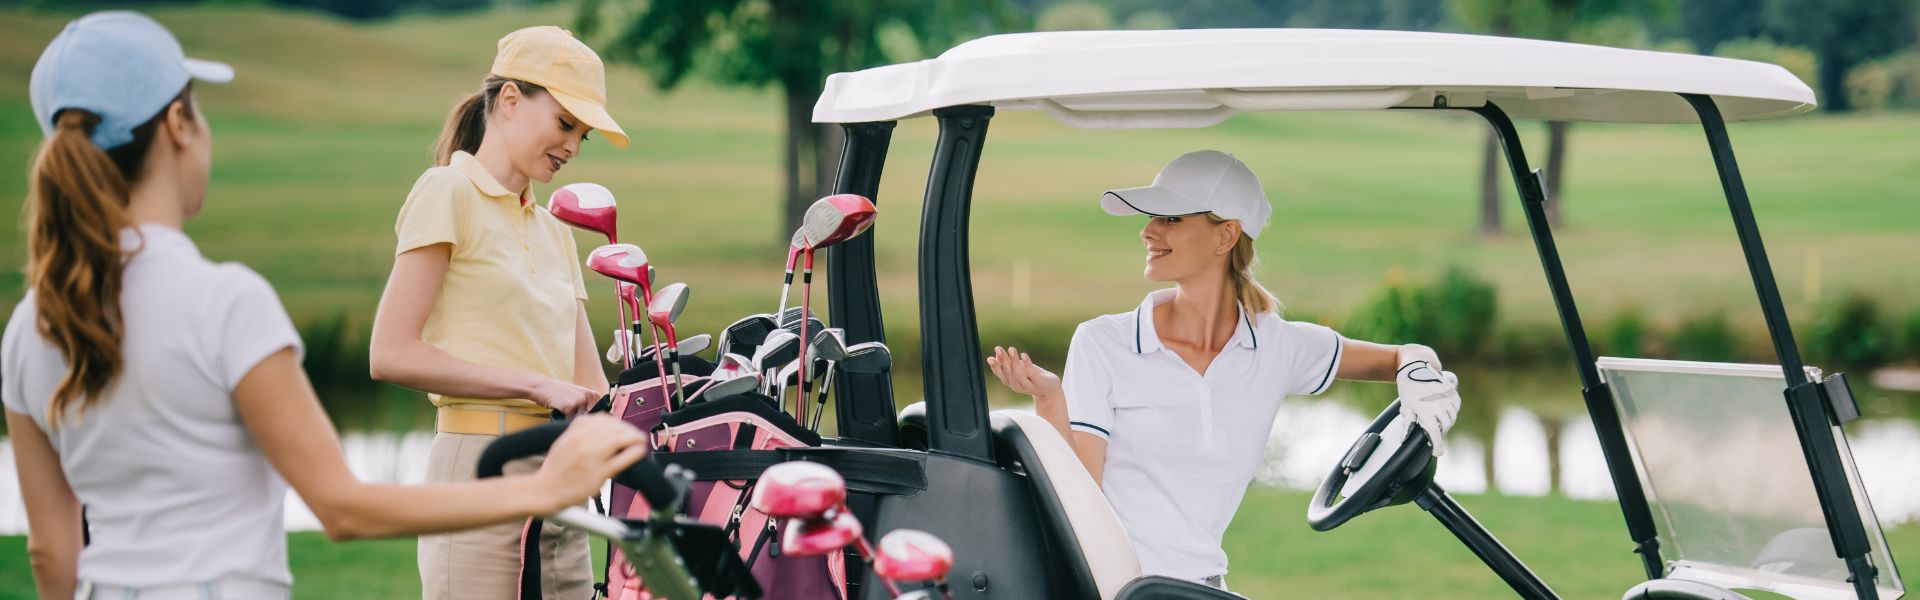 Co jste možná nevěděli o ženském golfu a jedné z jeho nejslavnějších představitelek Mickey Wright